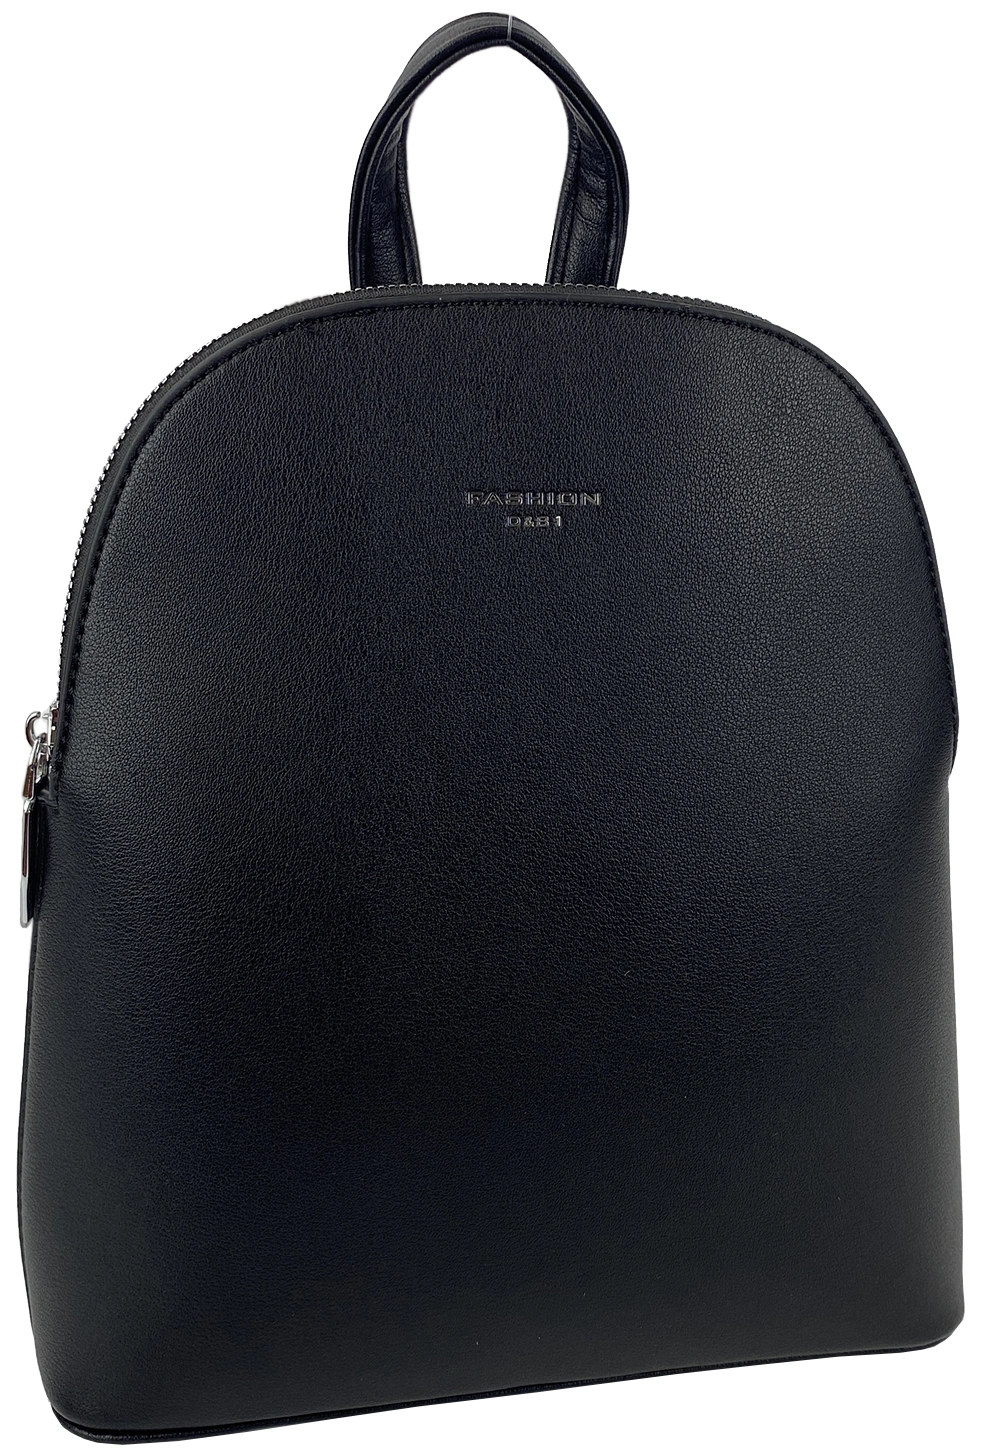 Рюкзак черный Fashion 882387